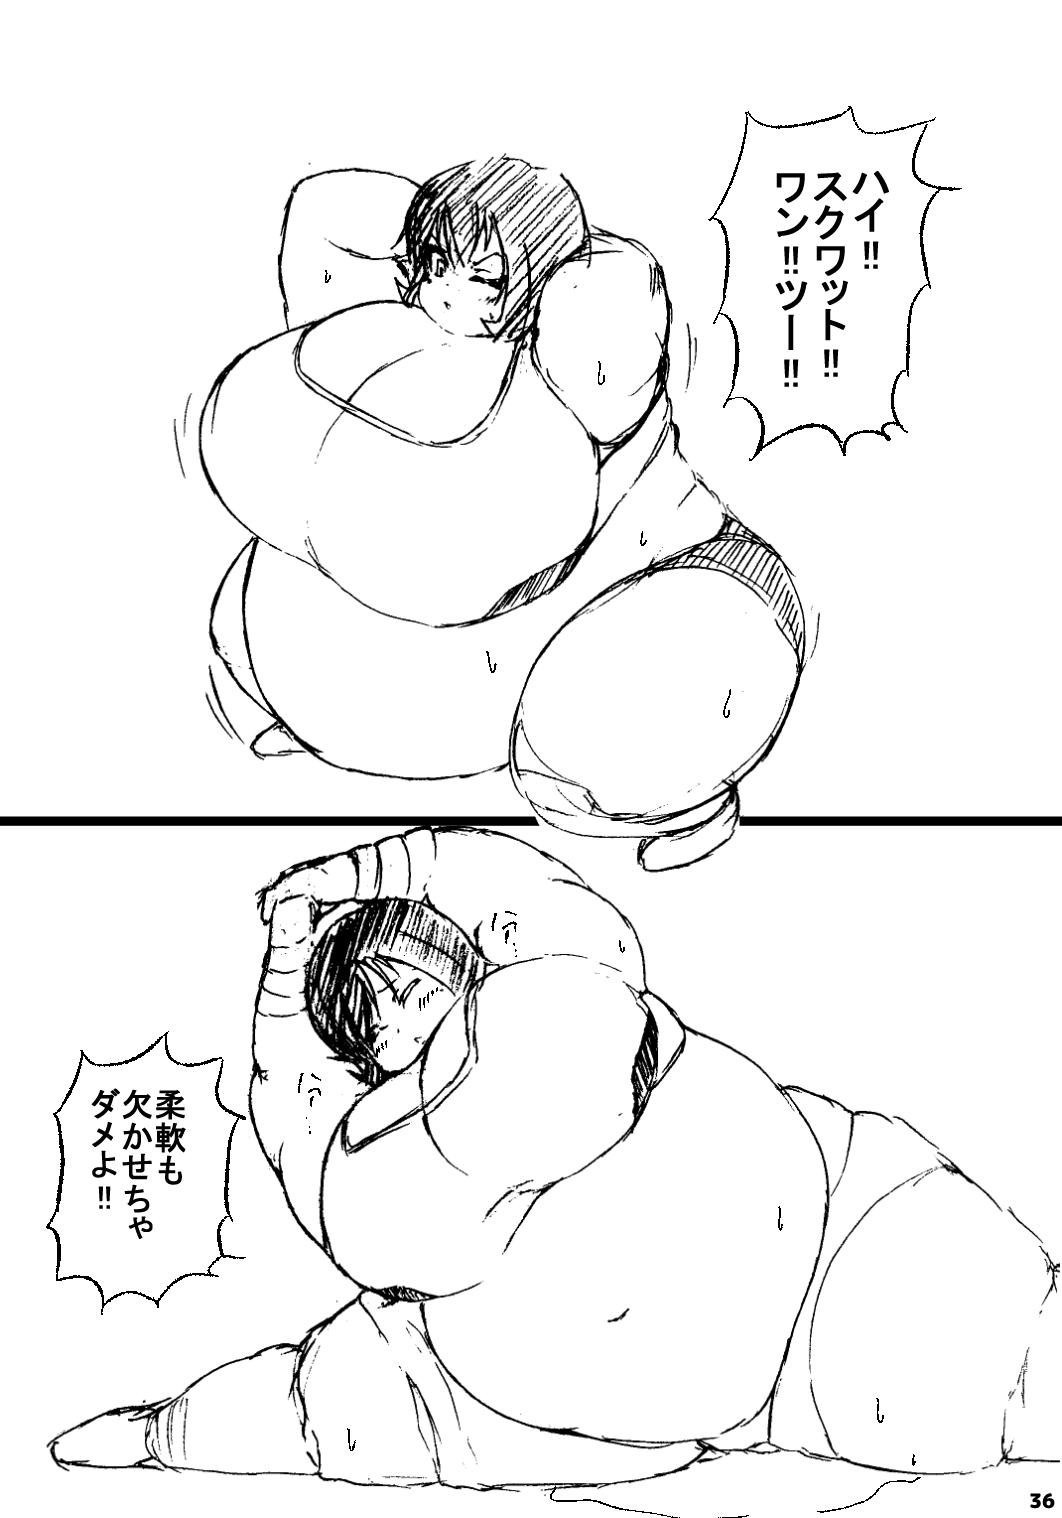 ポケスペカガリ肥満化漫画 34